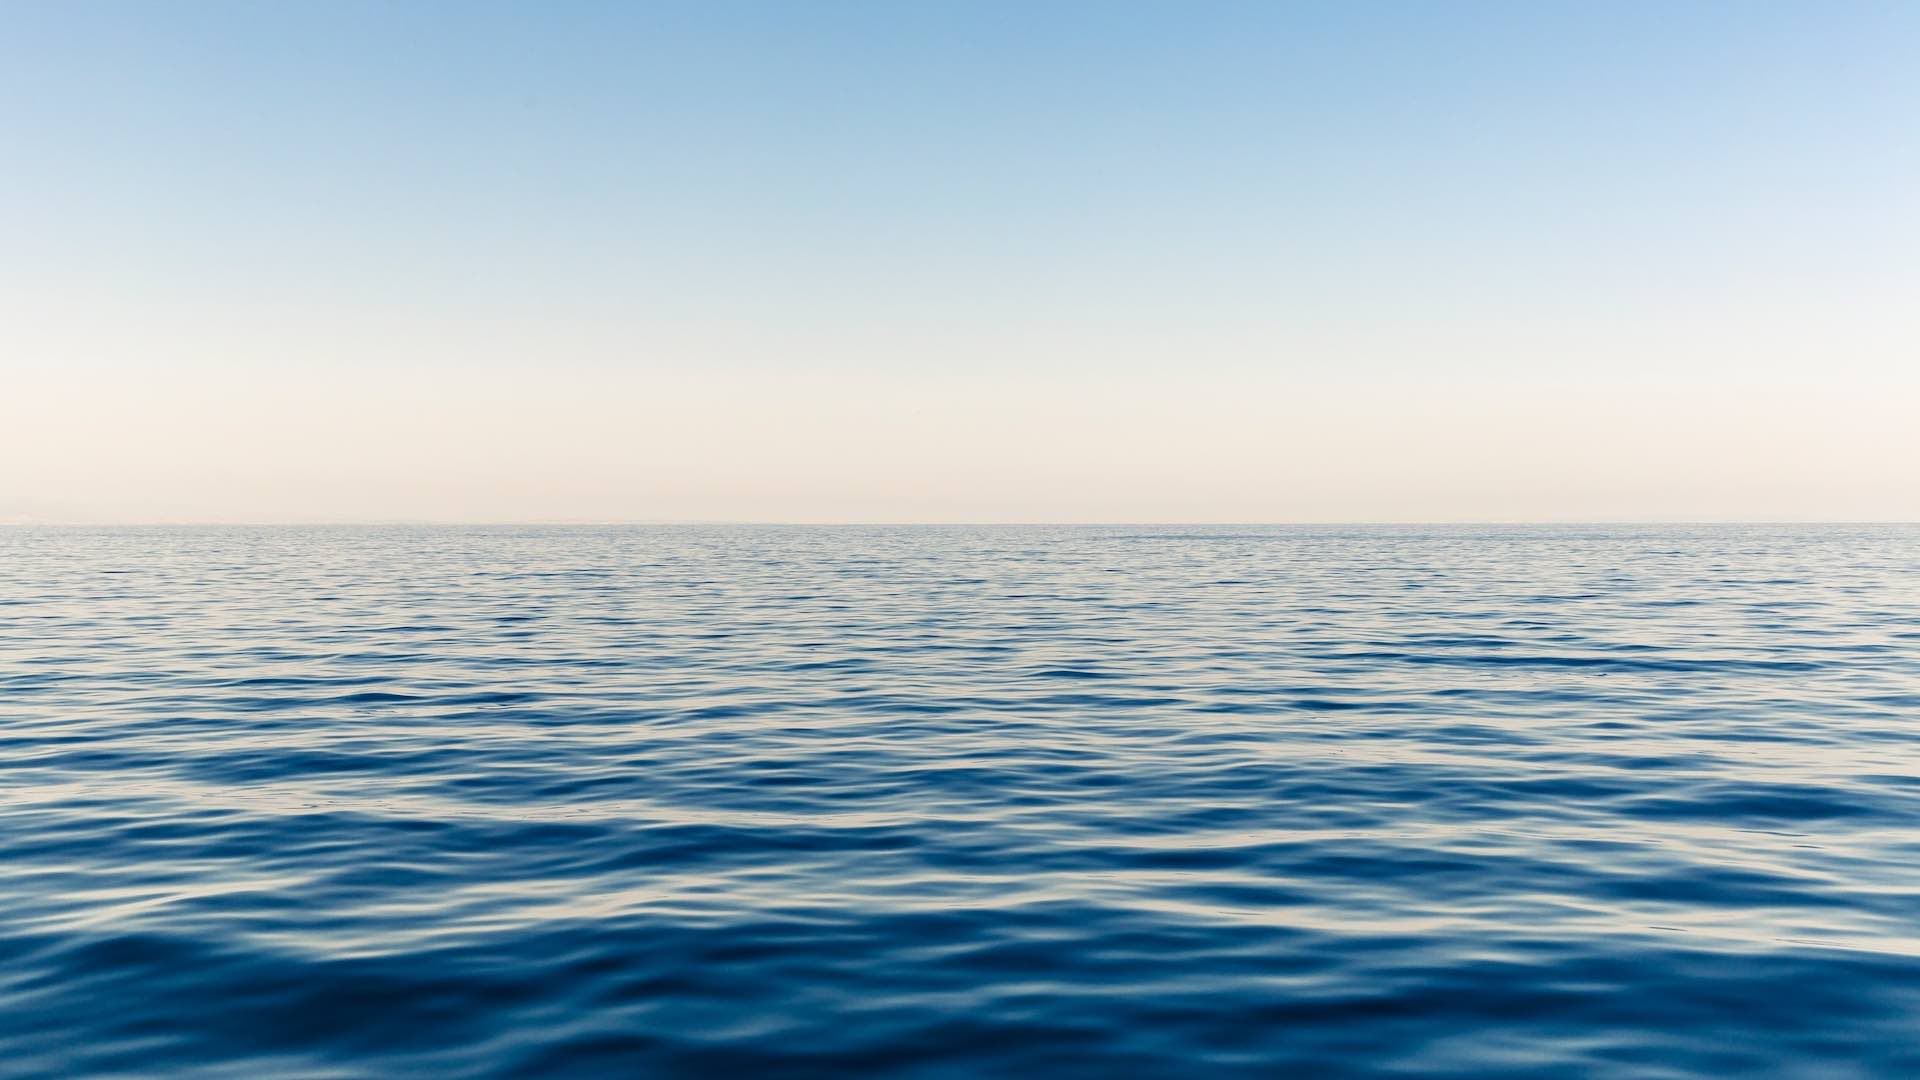 Ученые изучили загрязнение морей и океанов: какие металлы превышают норму?